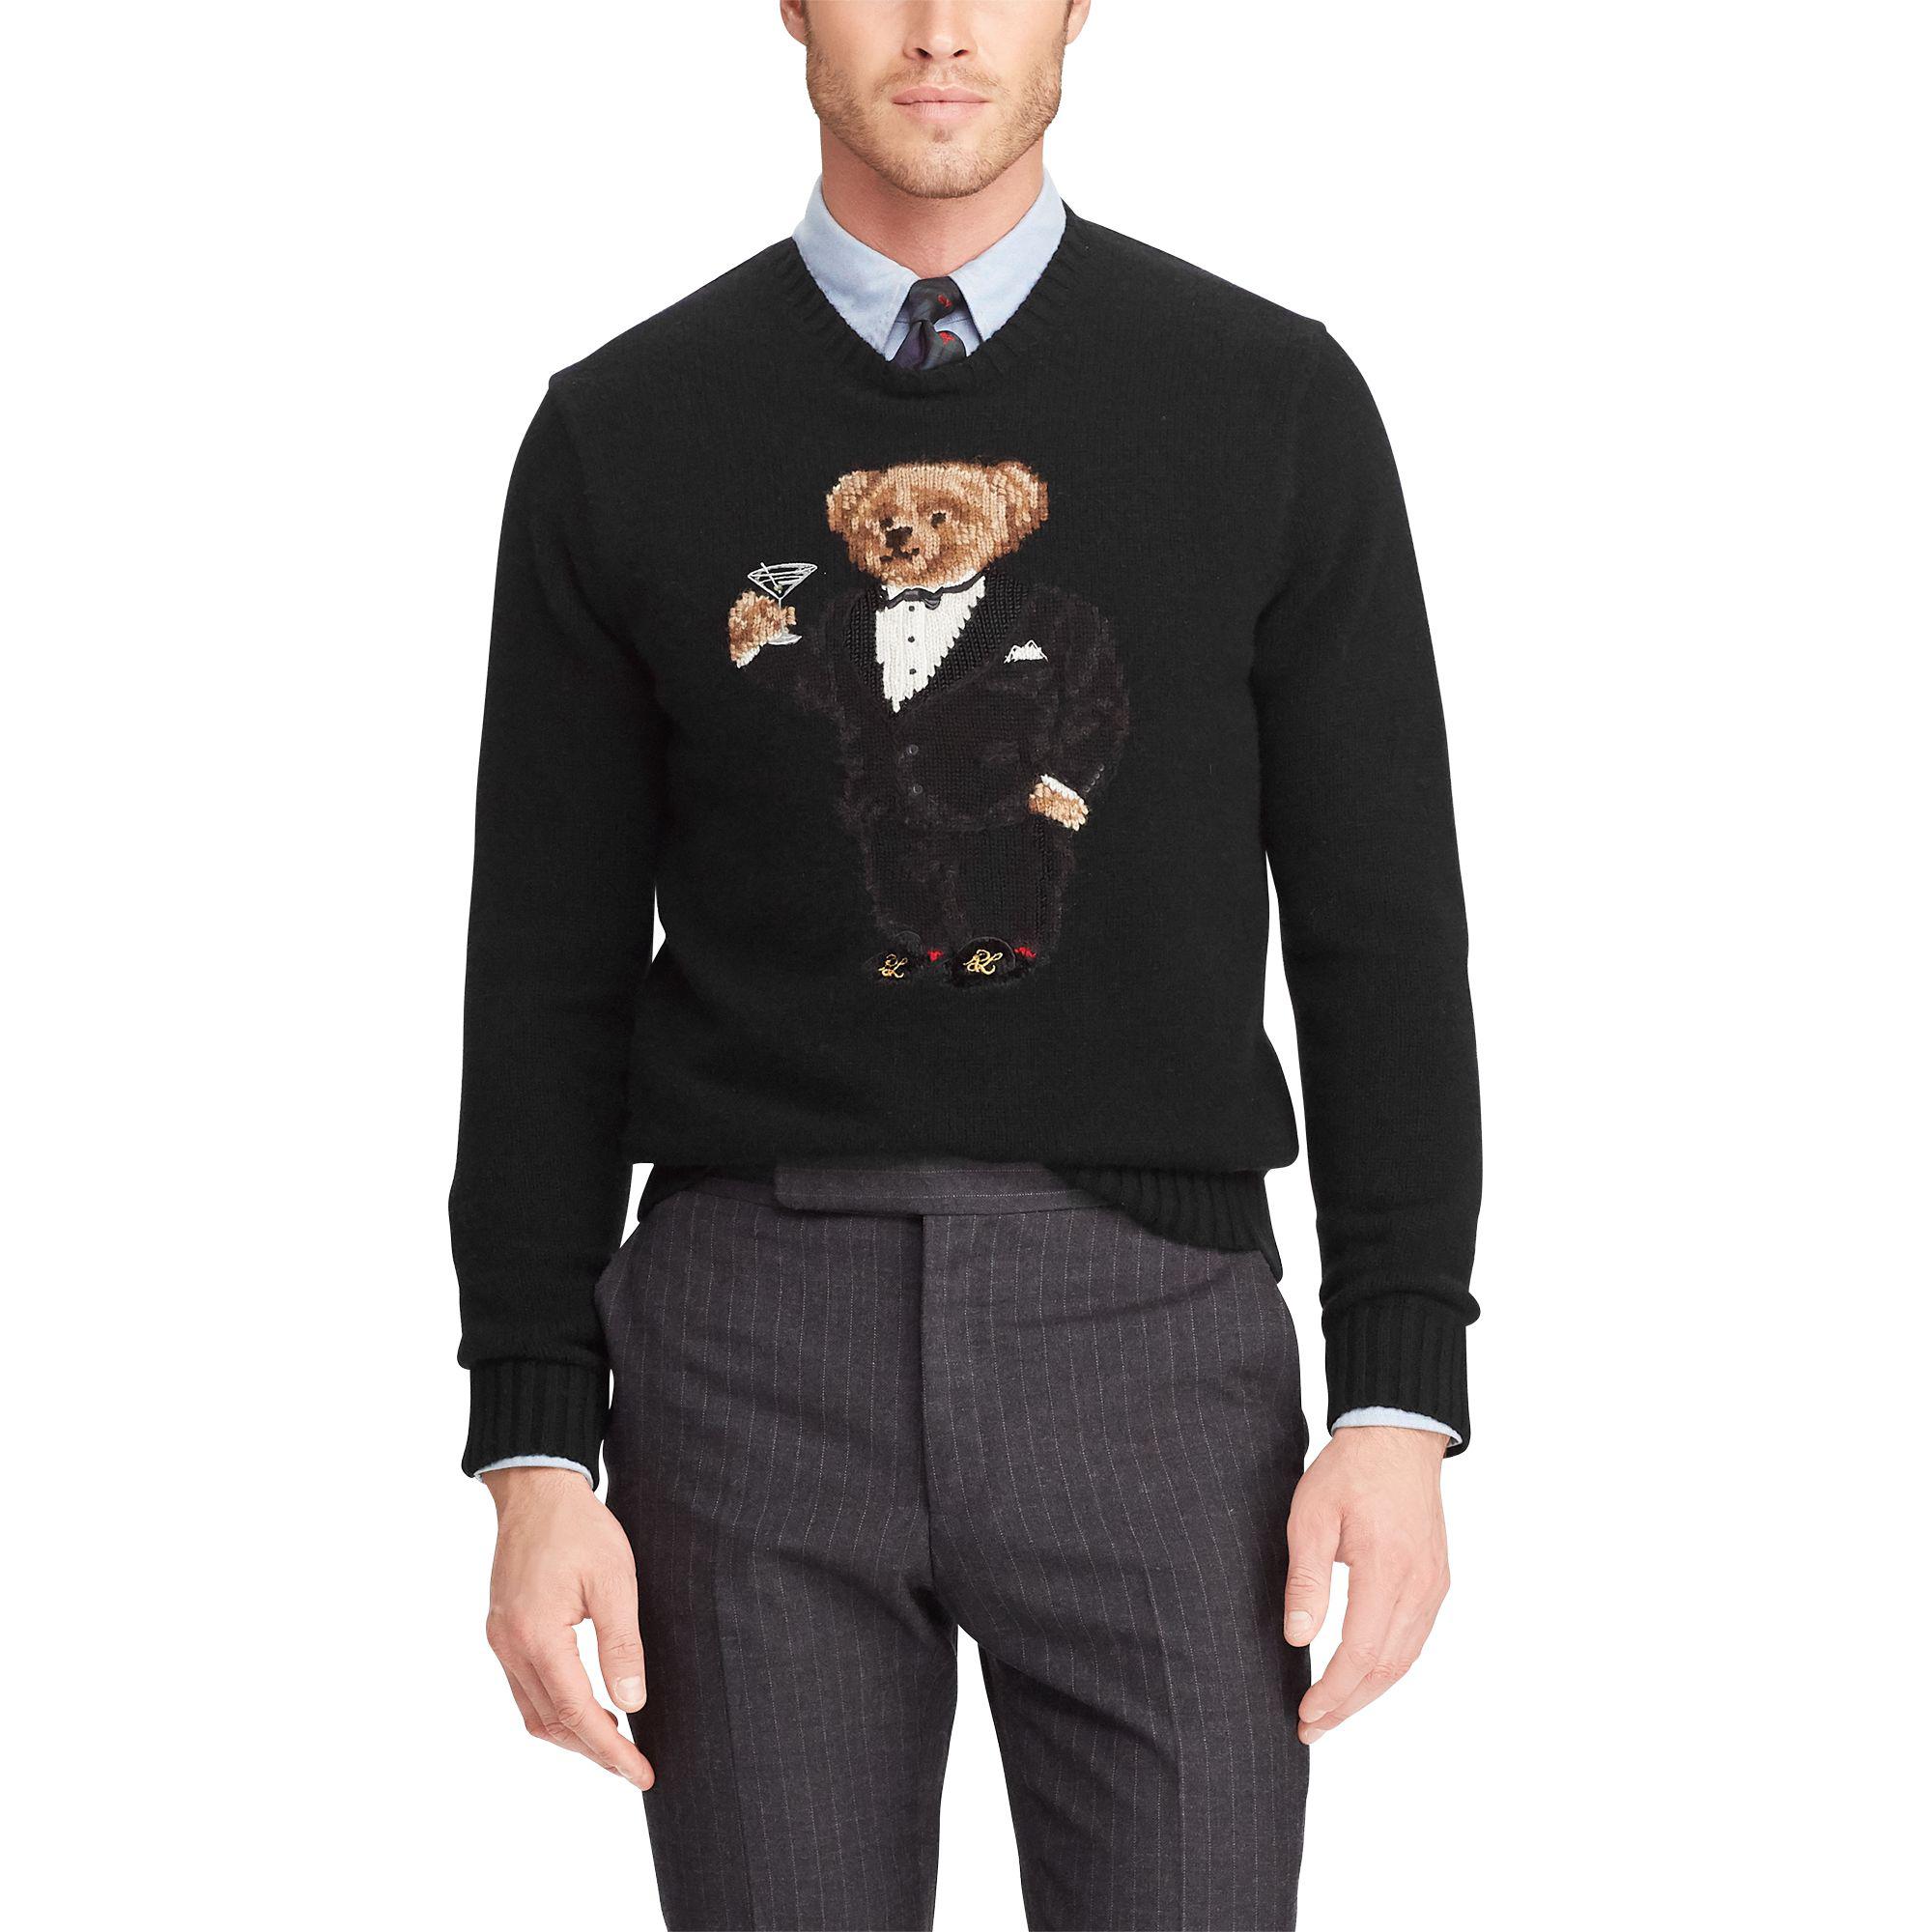 polo bear sweater tuxedo